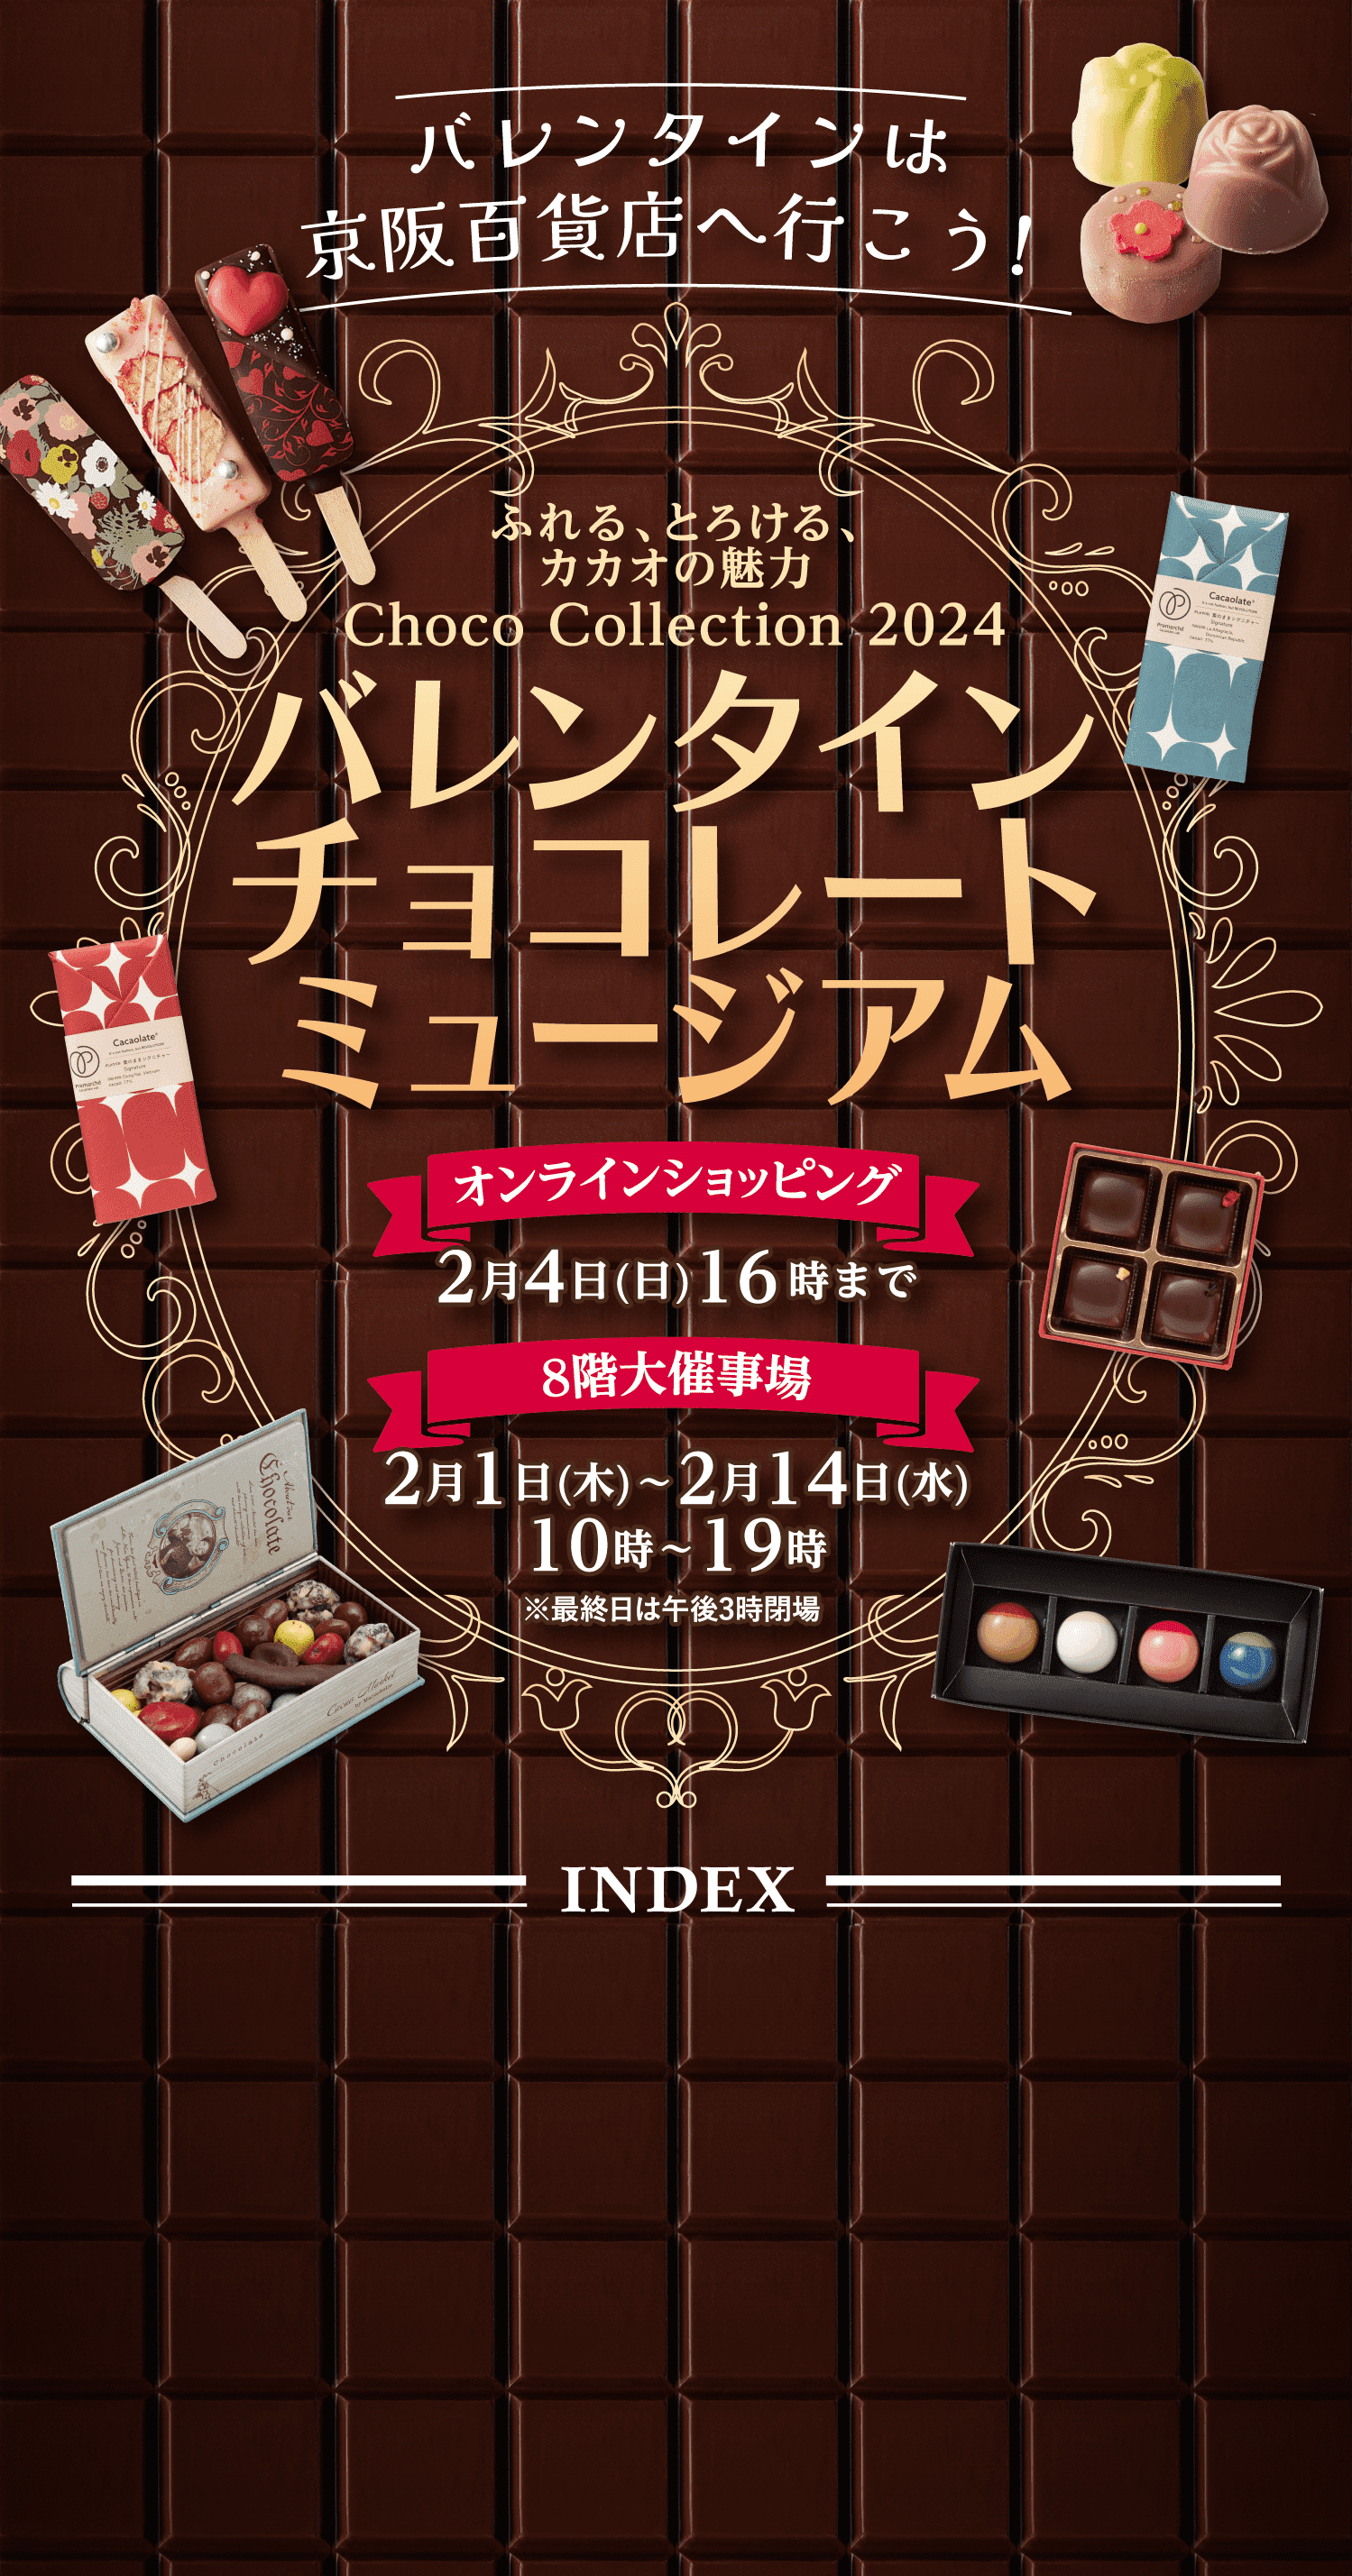 バレンタインは京阪百貨店ヘ行こう！ふれる、とろける、カカオの魅力 Choco Collection 2024「バレンタインチョコレートミュージアム」